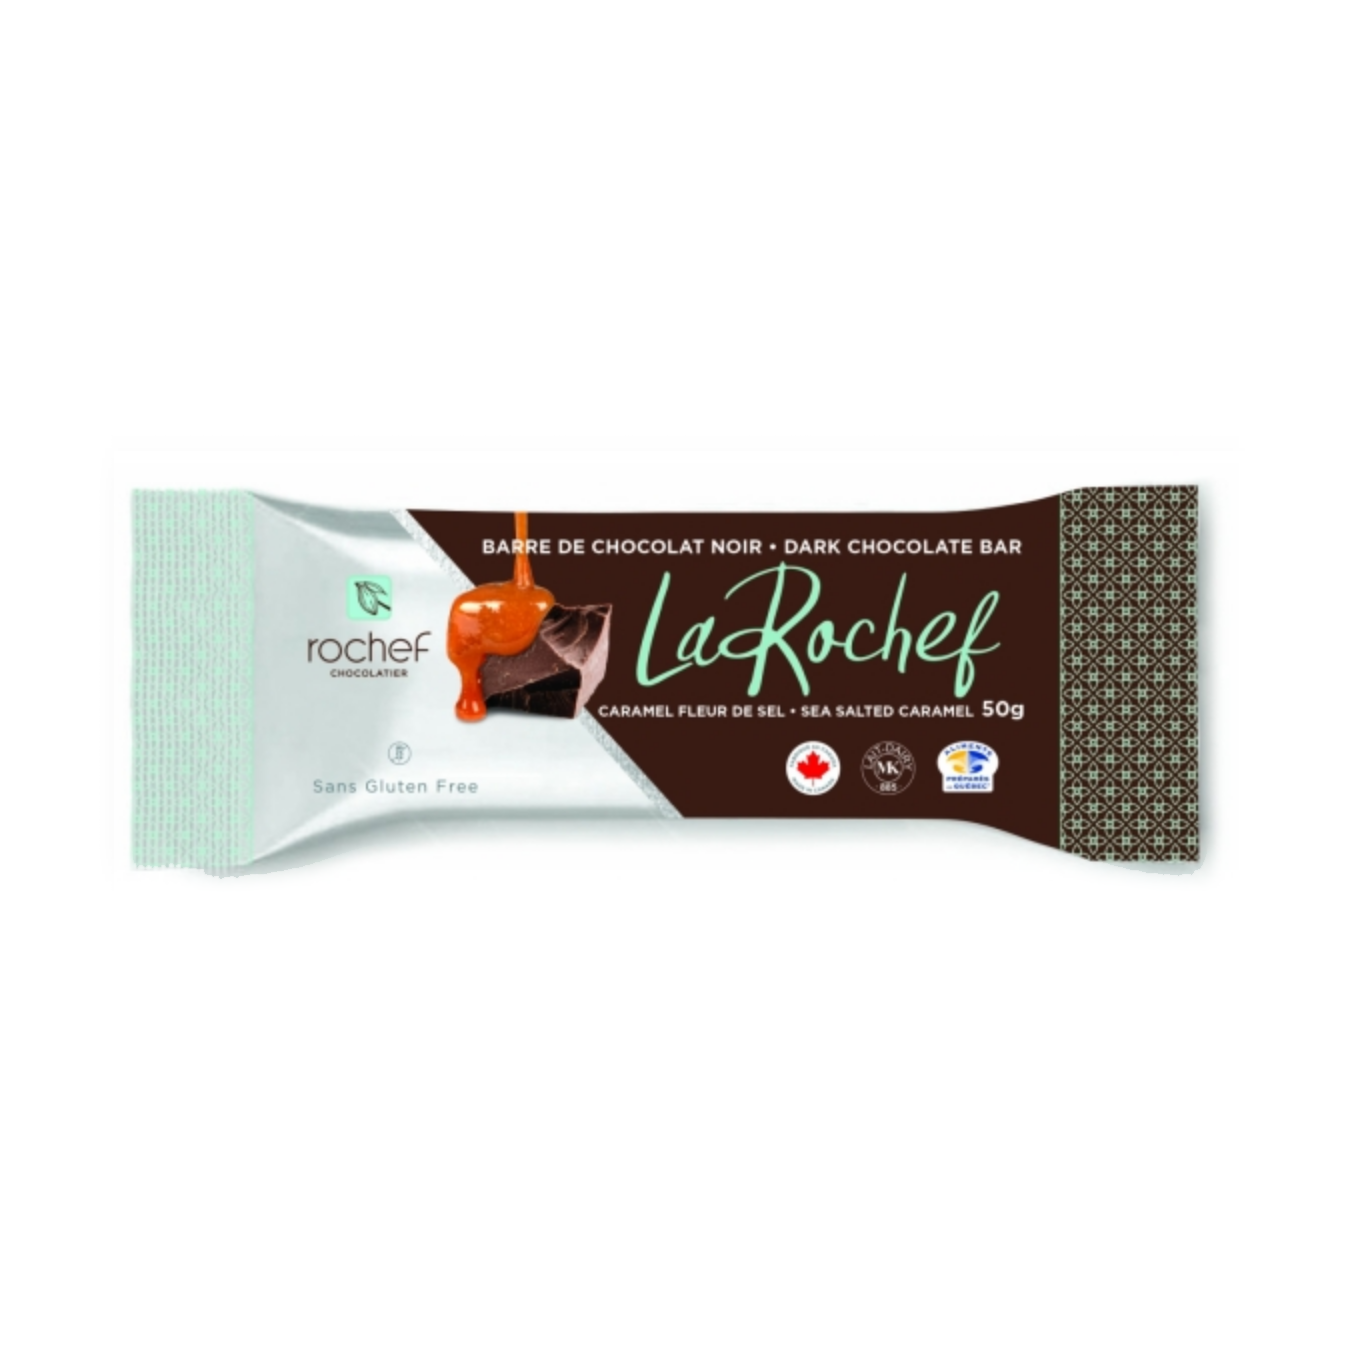 La Rochef, caramel doux salé avec tablette de chocolat noir 50g image